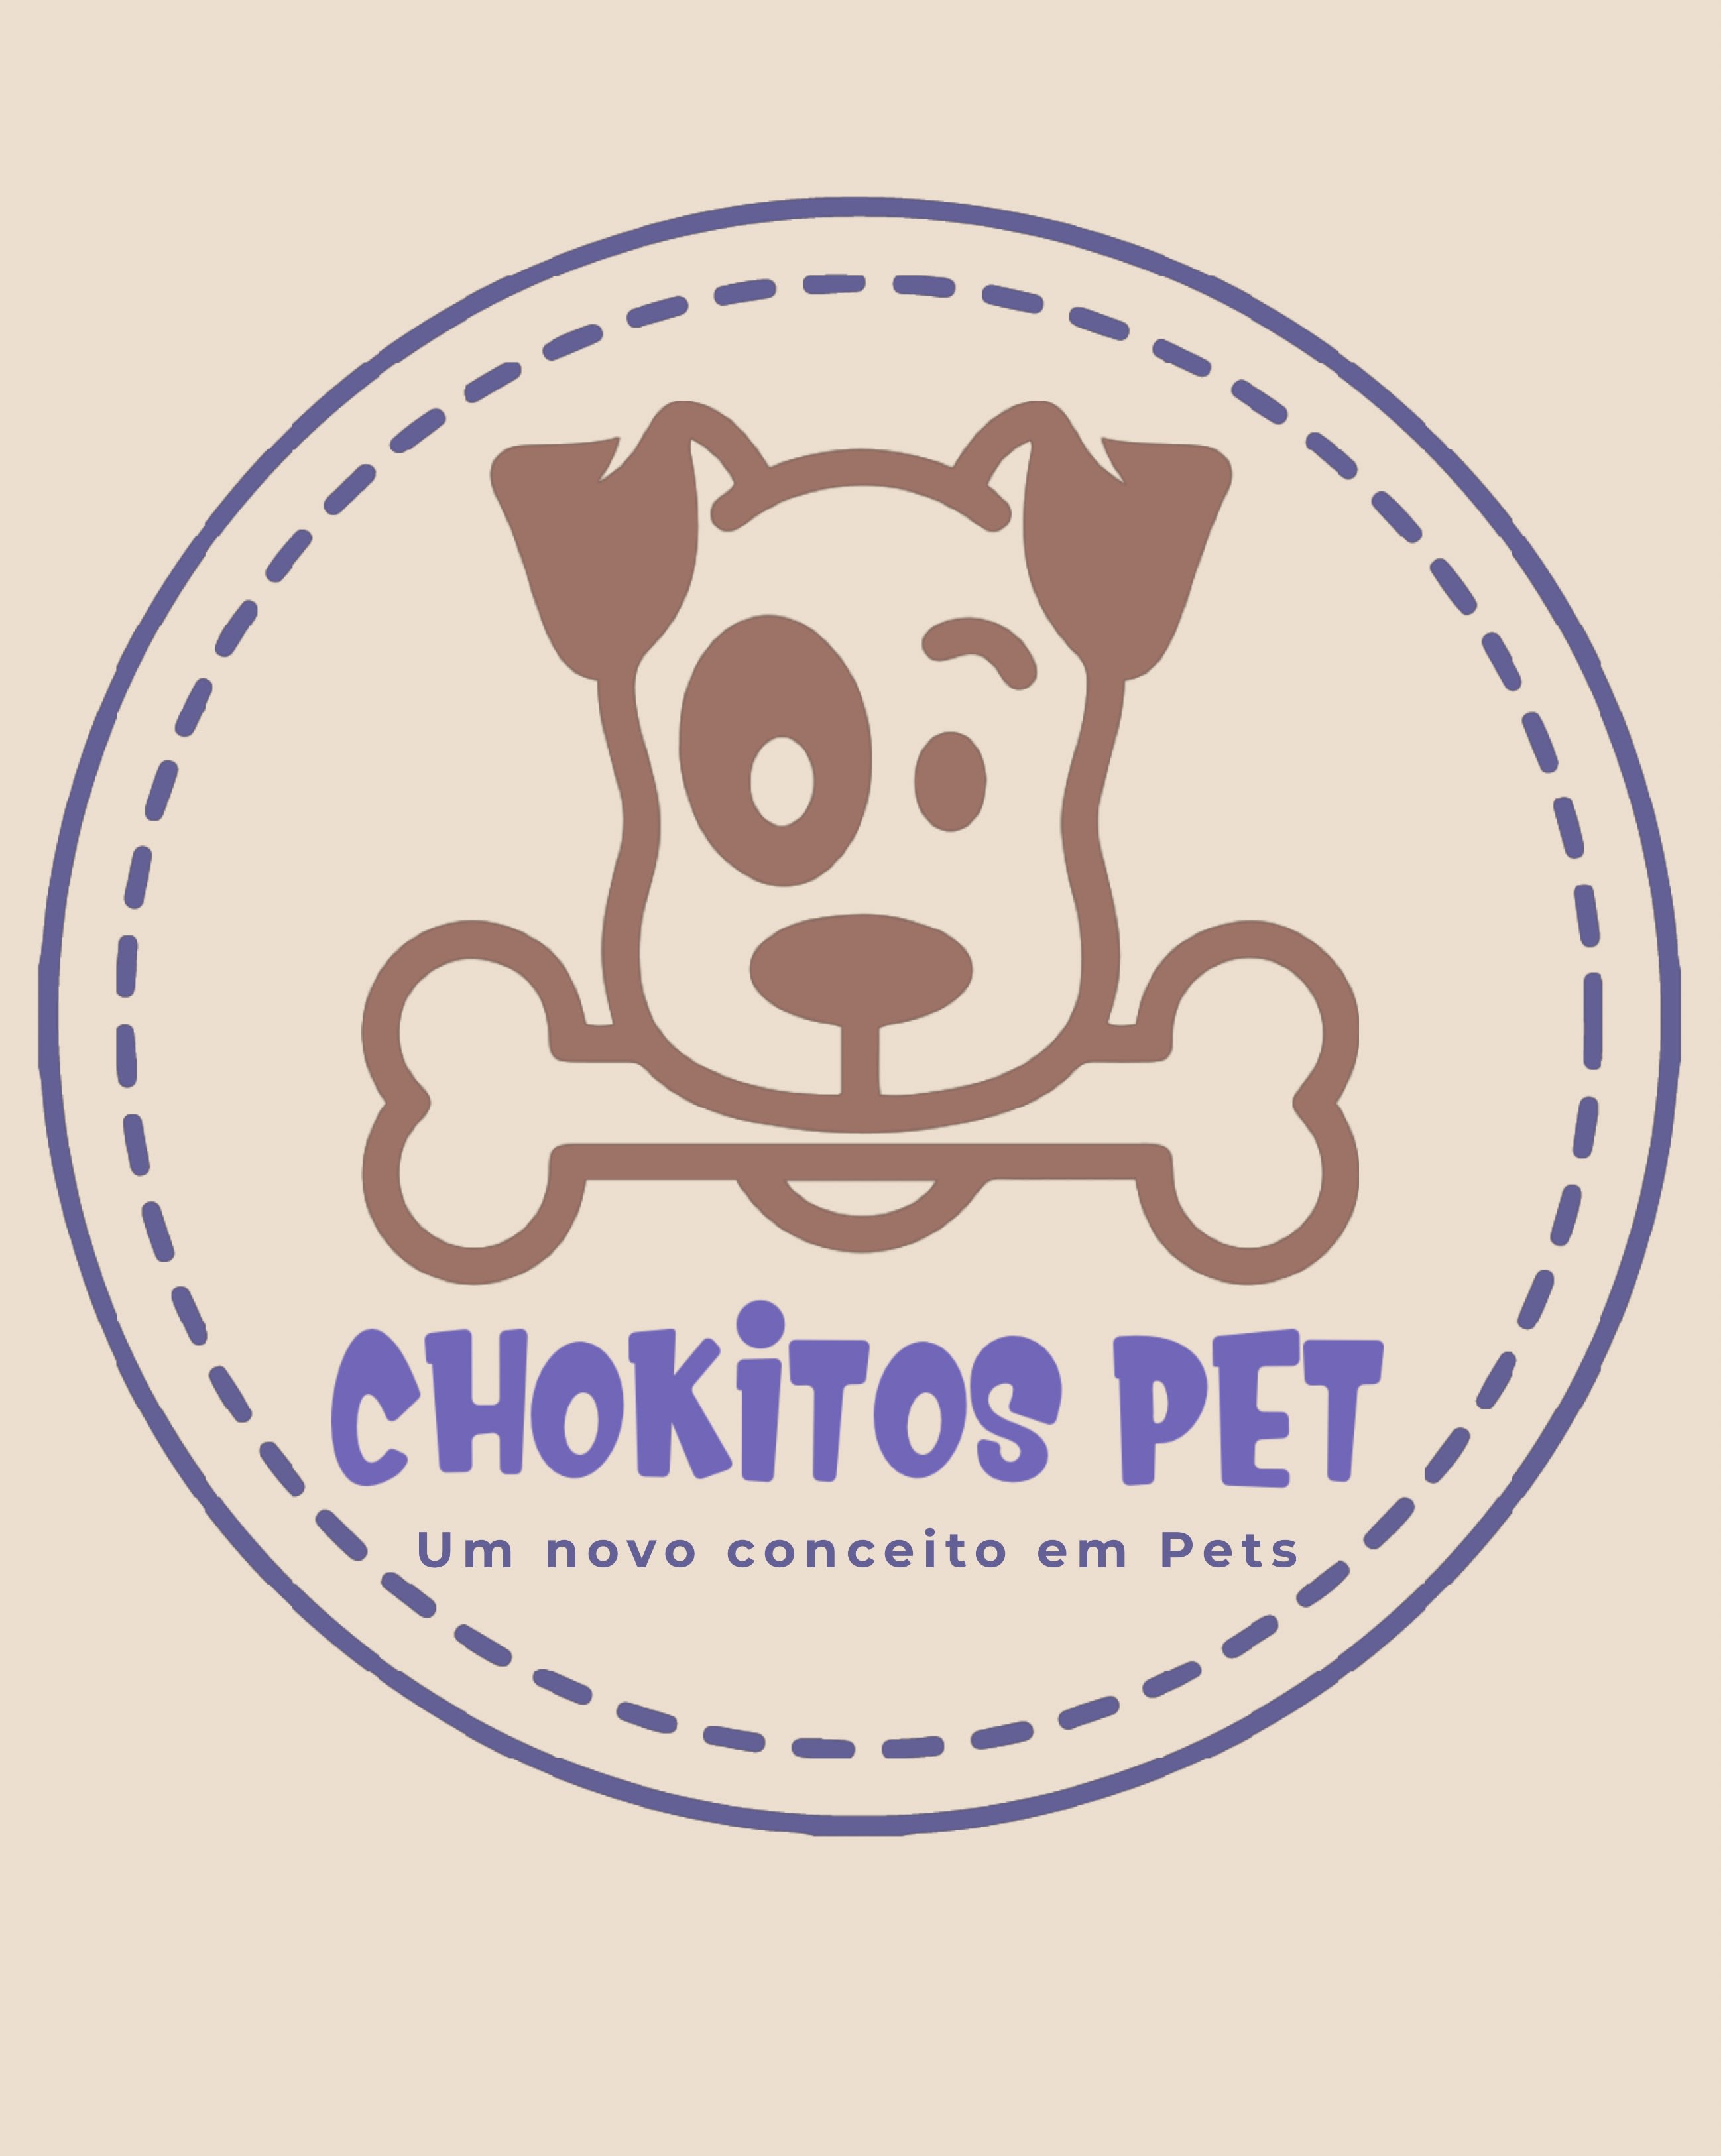 Chokitos Pet